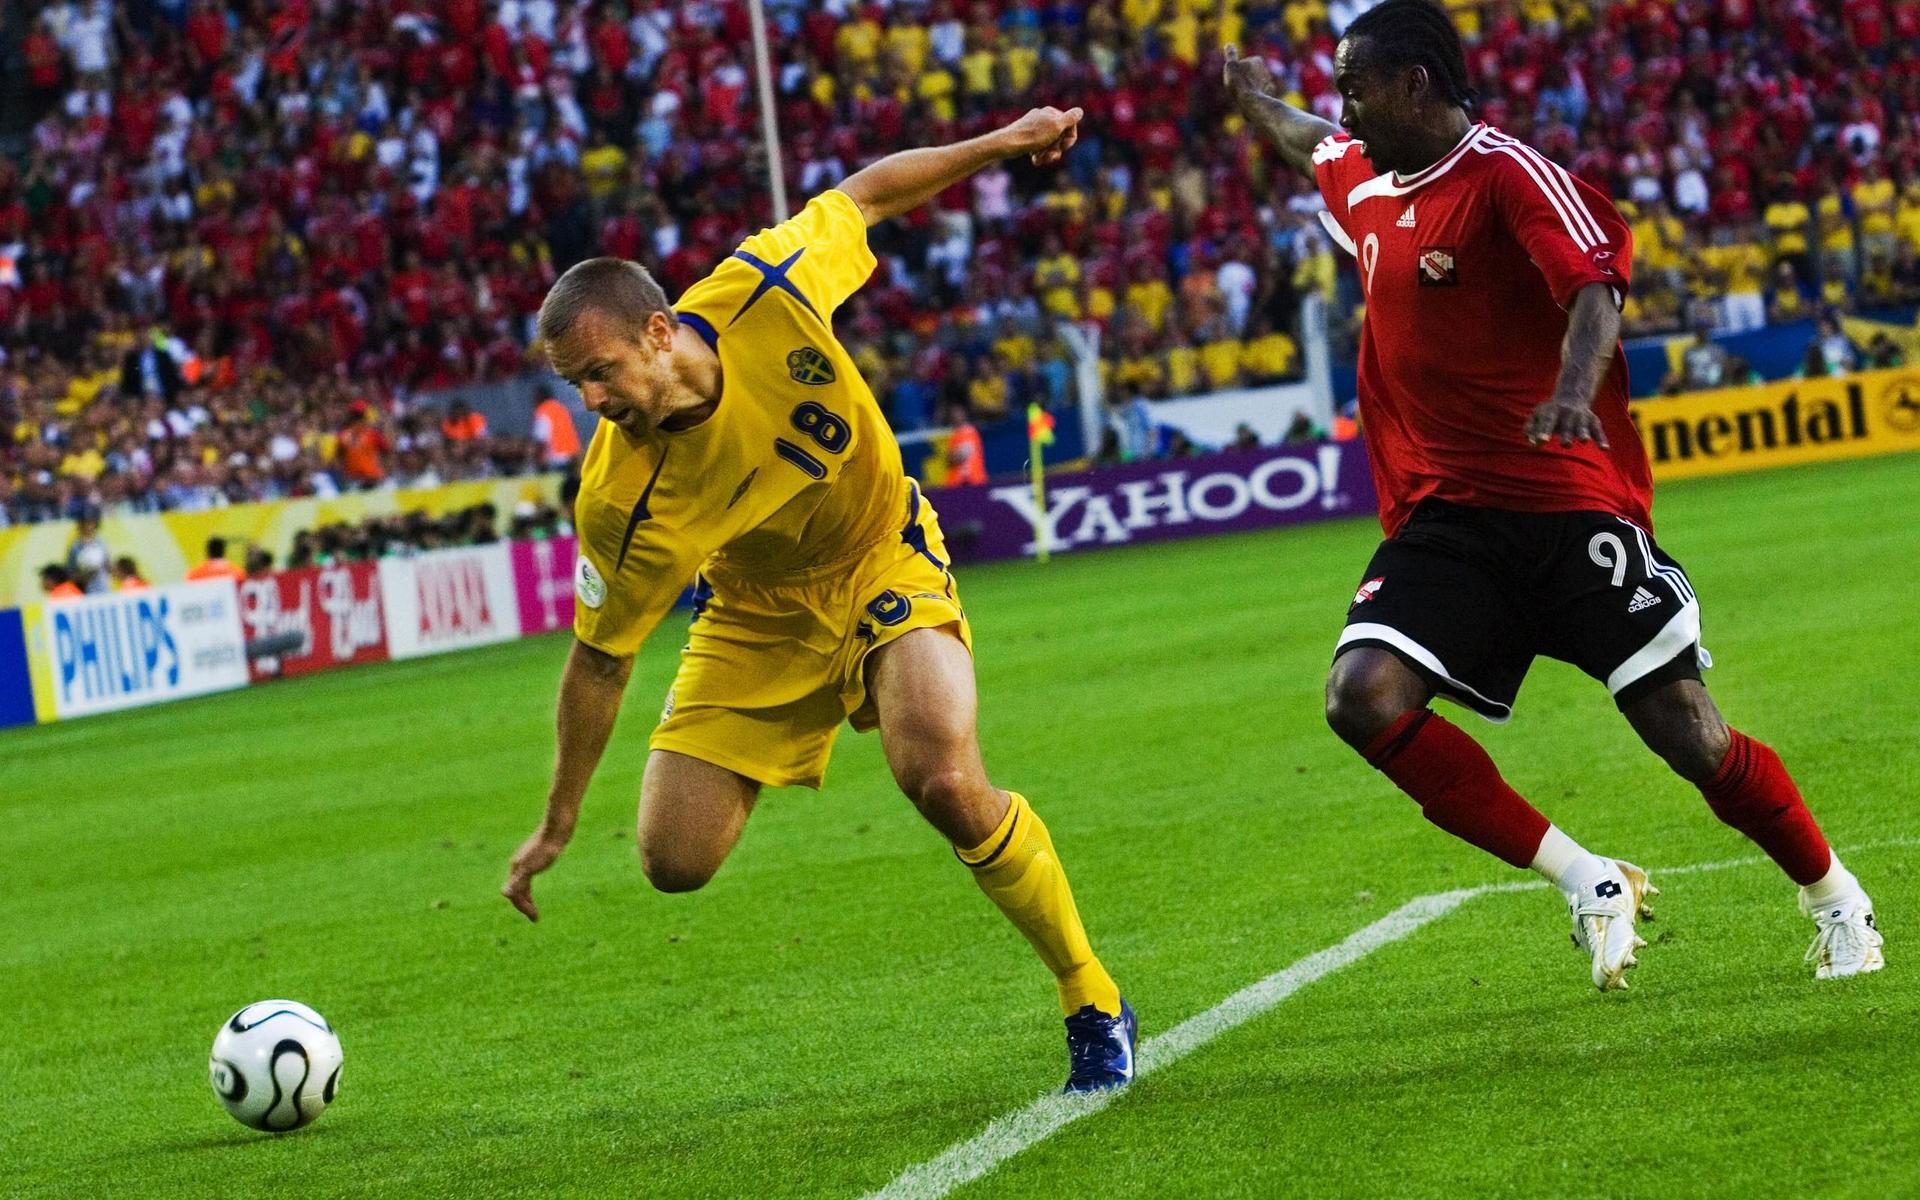 Mattias Jonson jagas av Aurtis Whitley mot Trinidad och Tobago 2006. Den gången blev det 0-0 och Sverige gick vidare till åttondelsfinal til slut. 